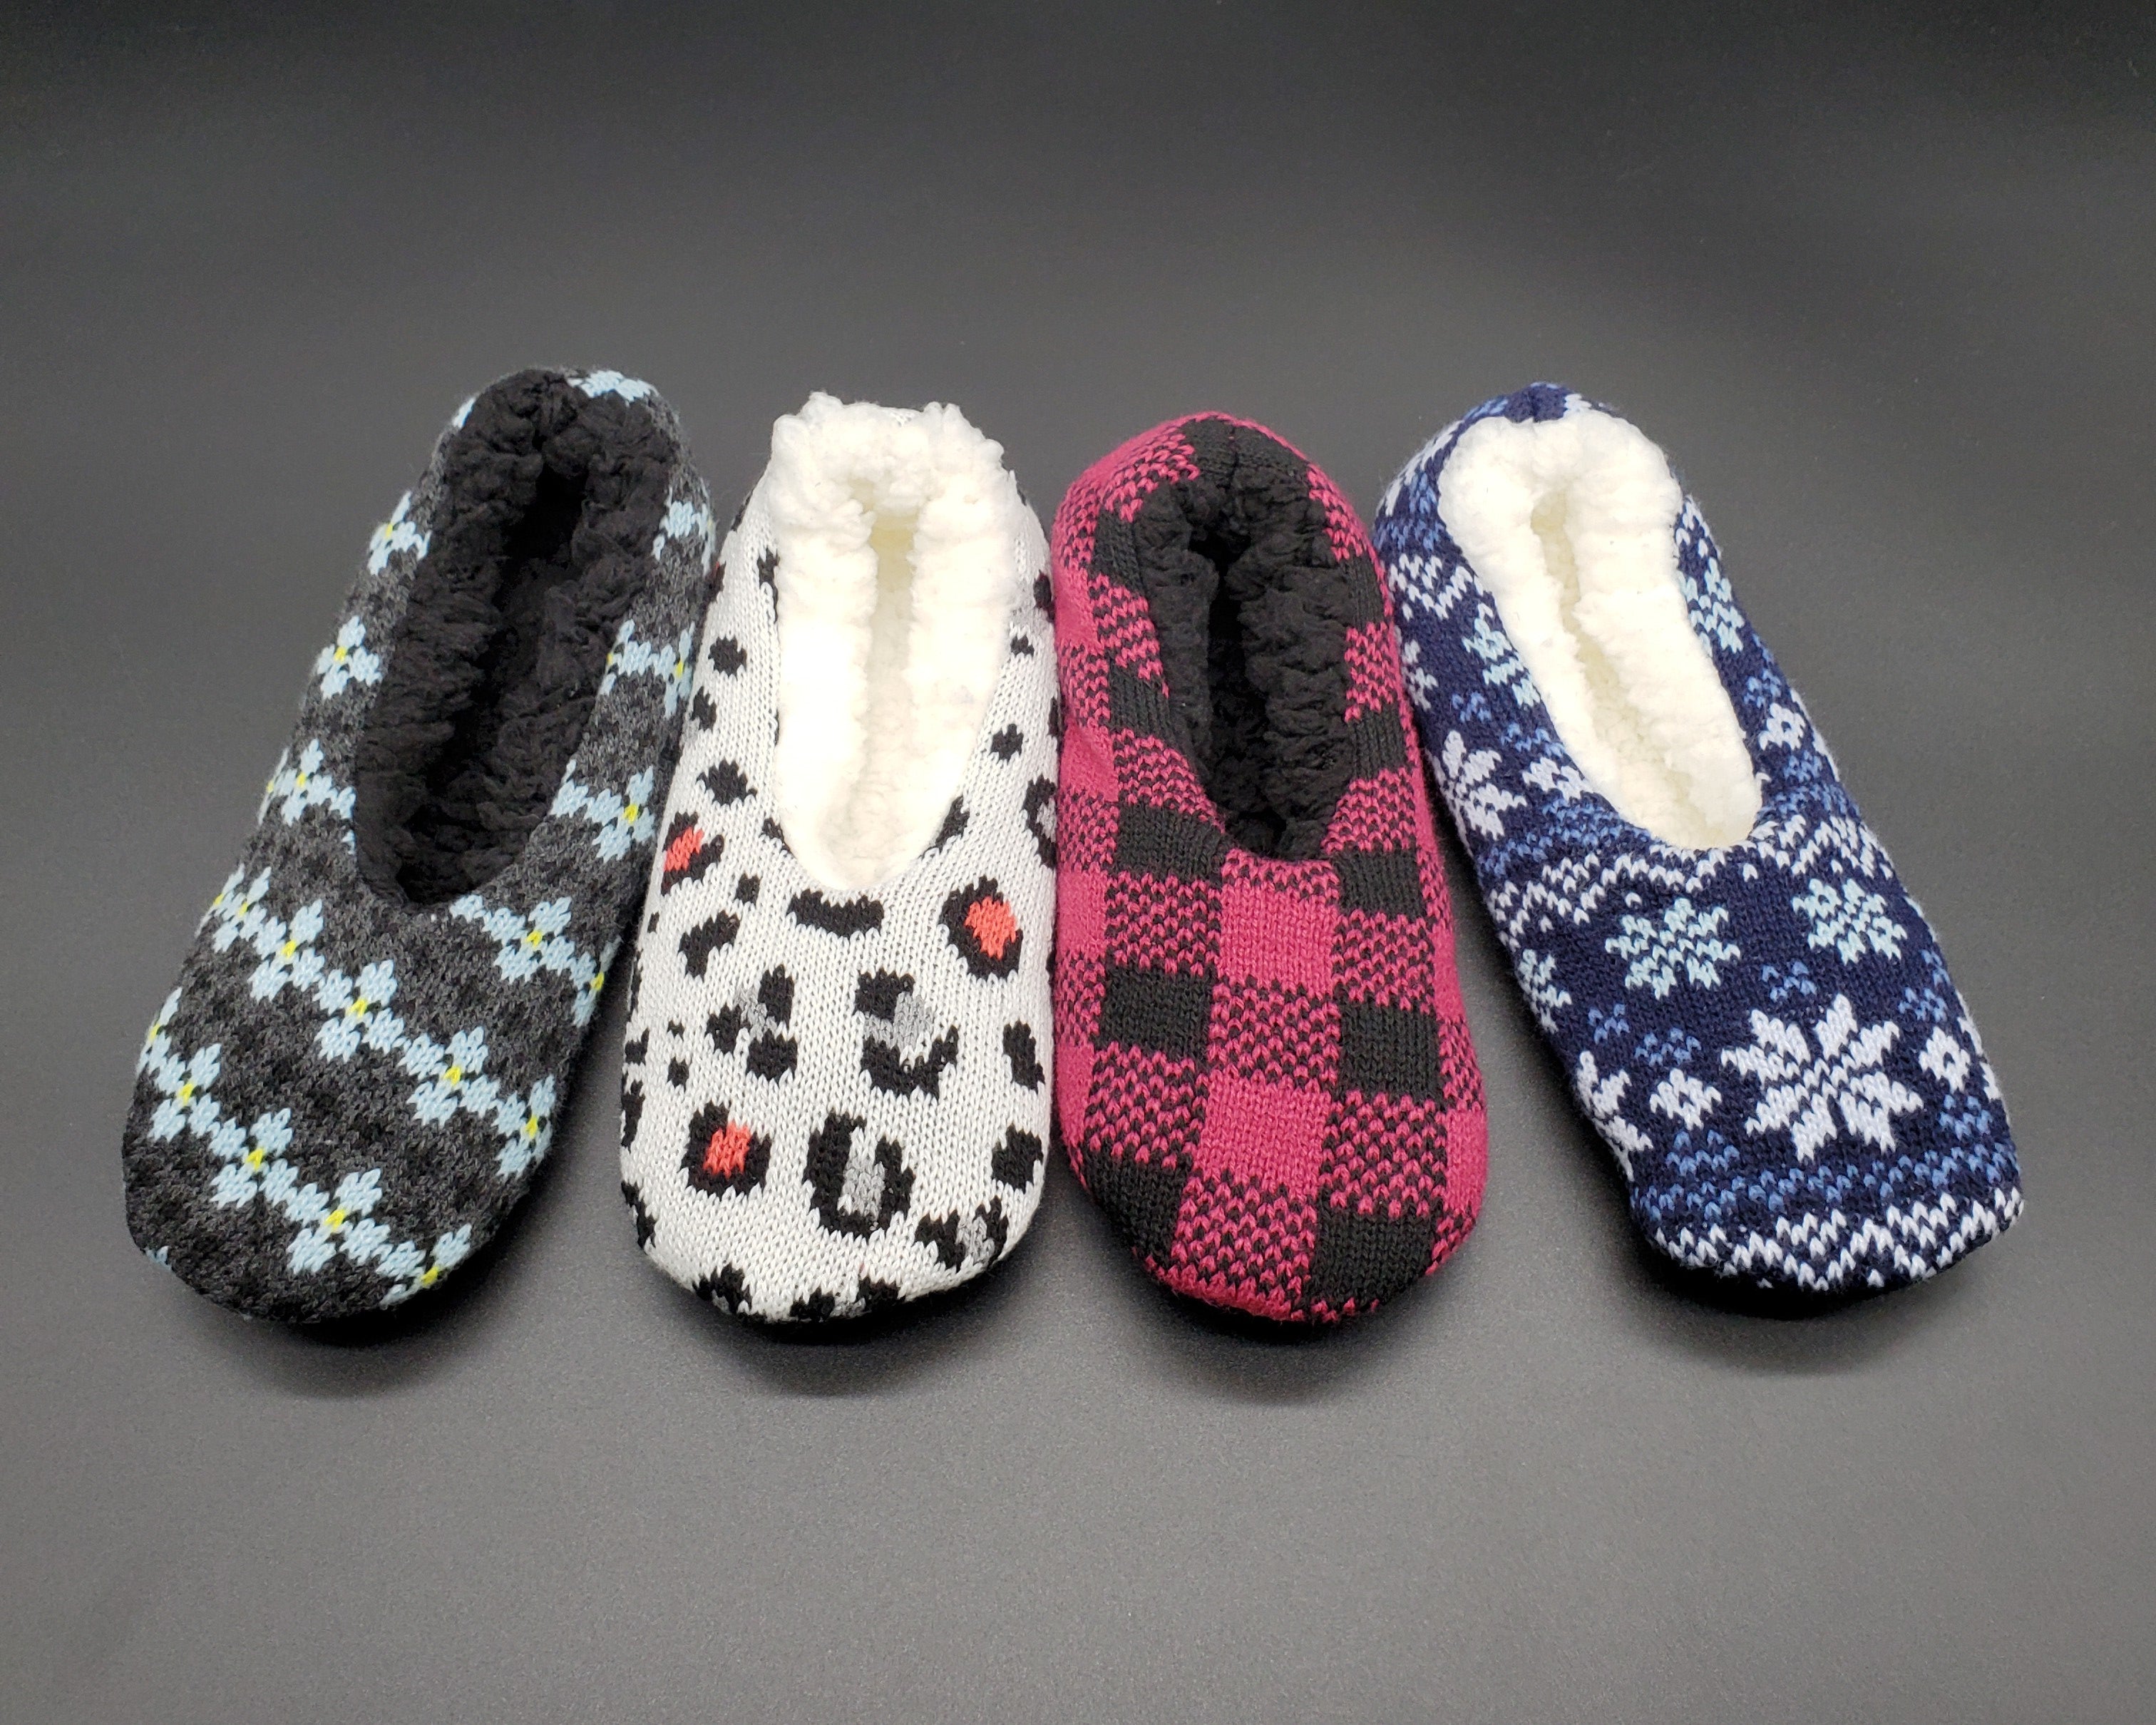 Indsigt Sovesal Let at forstå Women's Slippers, Polar Extreme Indoor Slipper Socks, Comfy Non Skid H –  Klicktocart